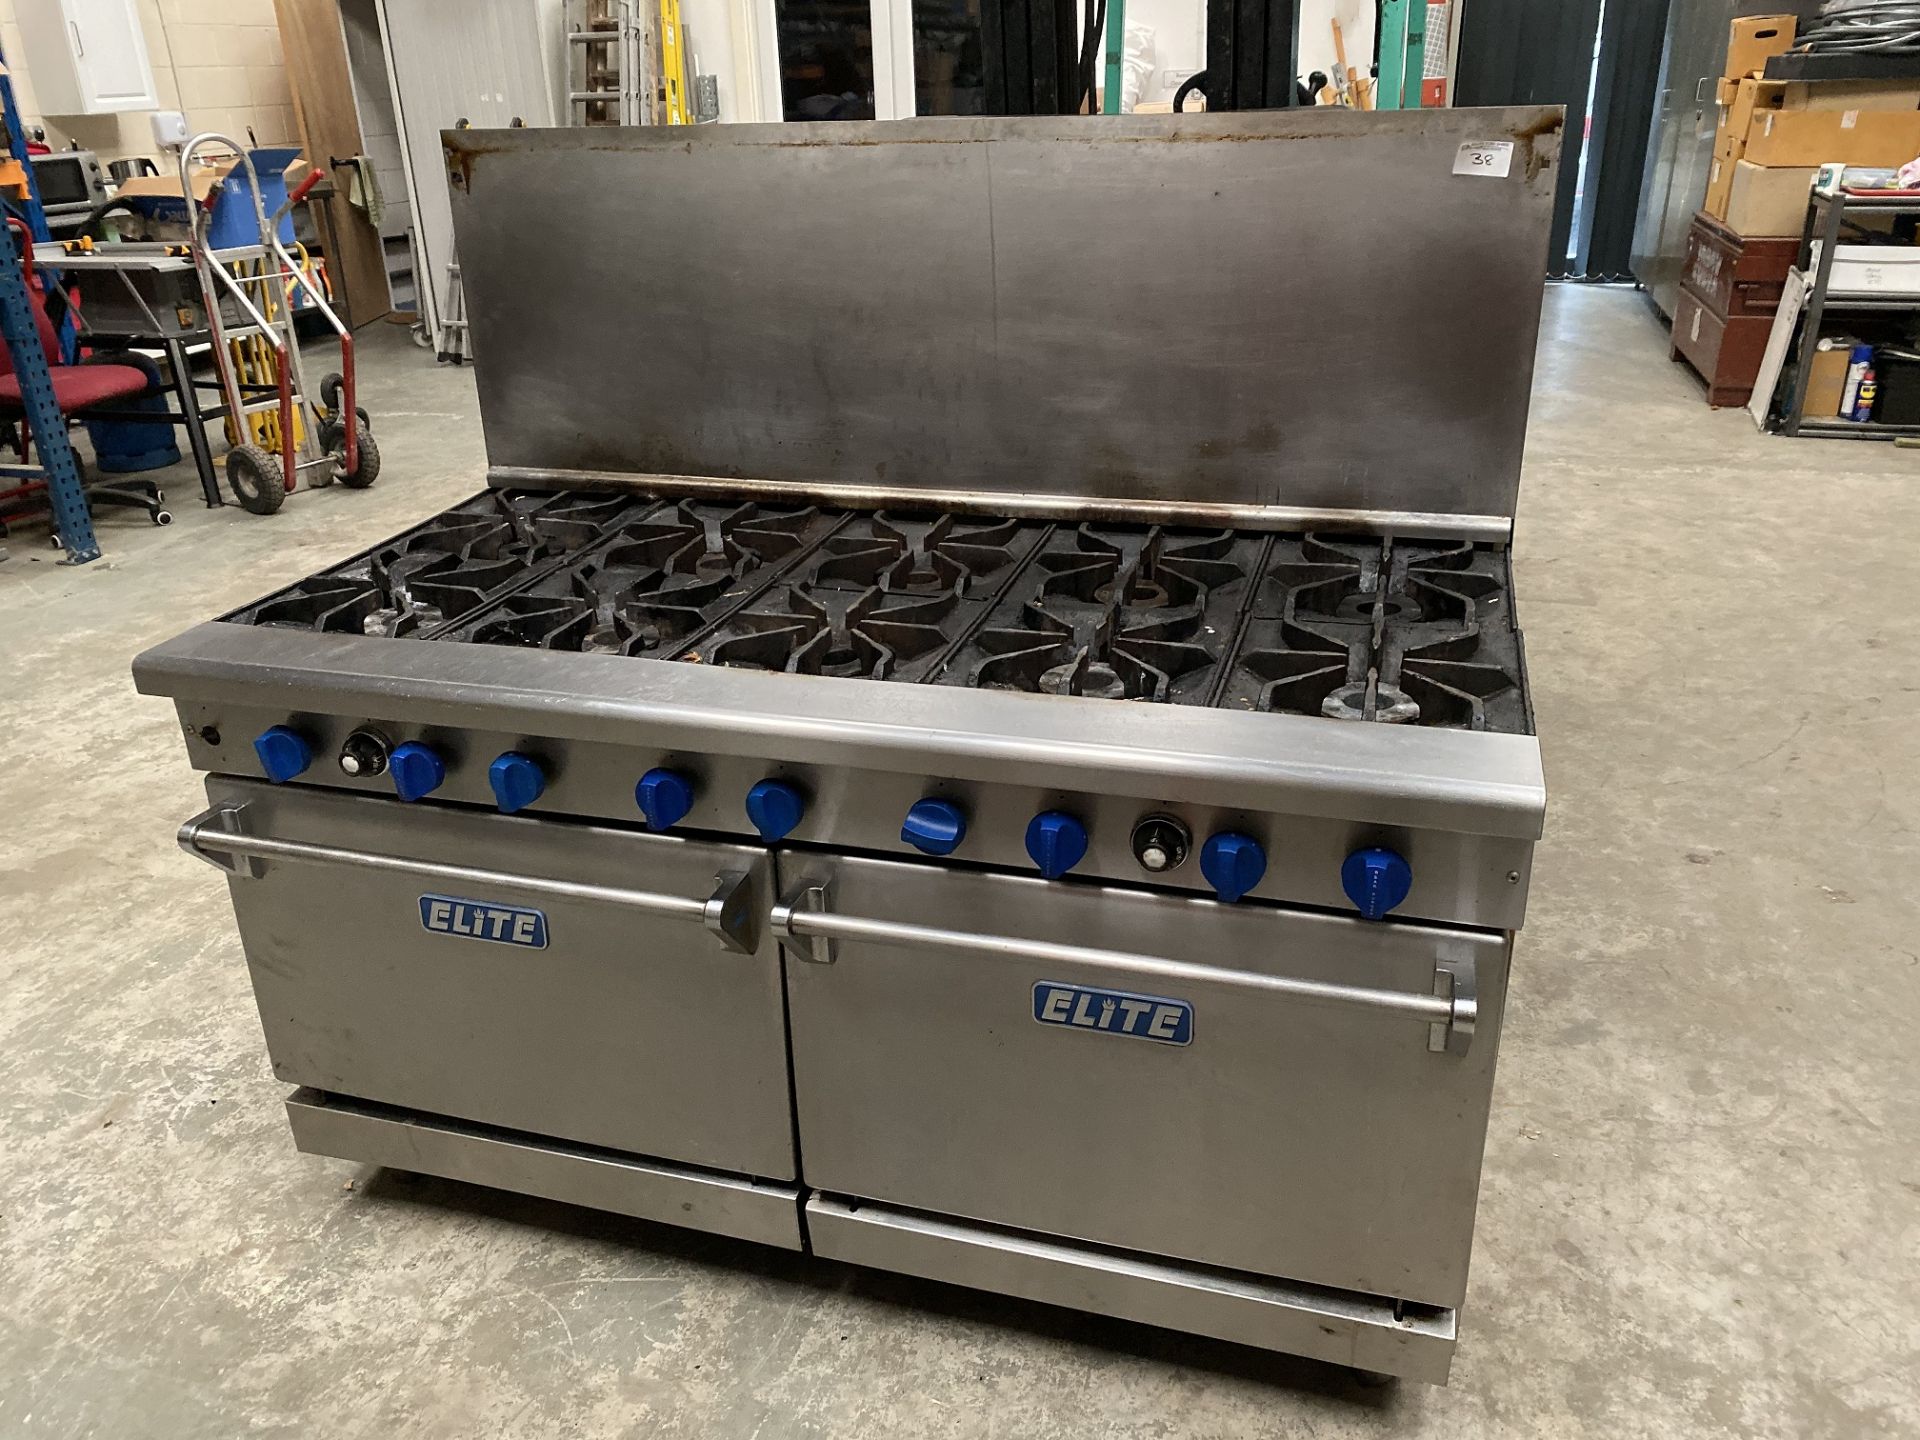 Elite 10 Burner Cooking Range with 2 Large Ovens